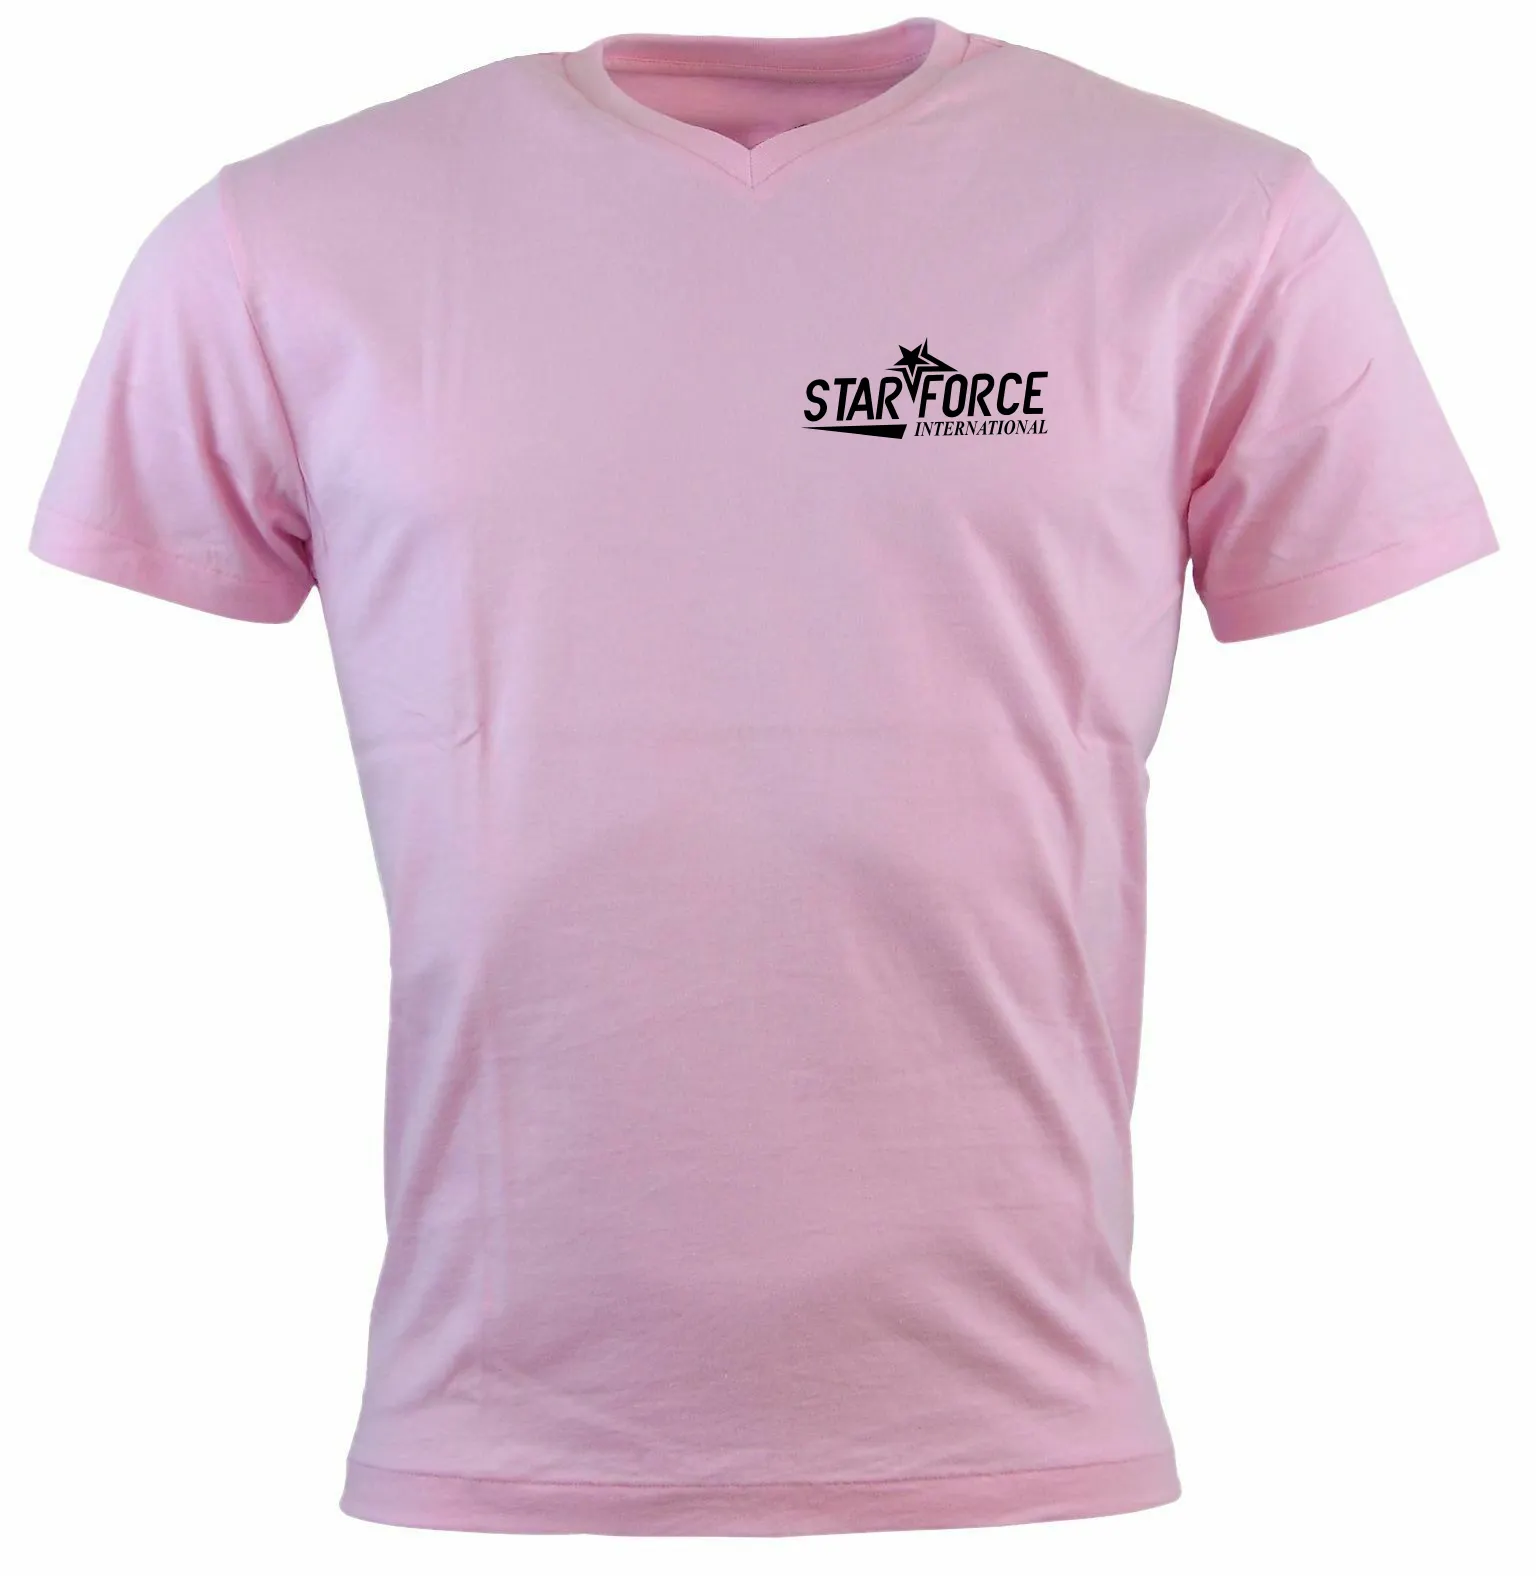 Mini camiseta personalizada con logo, Impresión de camisetas personalizadas, 100% algodón, 25 colores, talla de EE. UU., venta al por mayor, coste de envío gratis